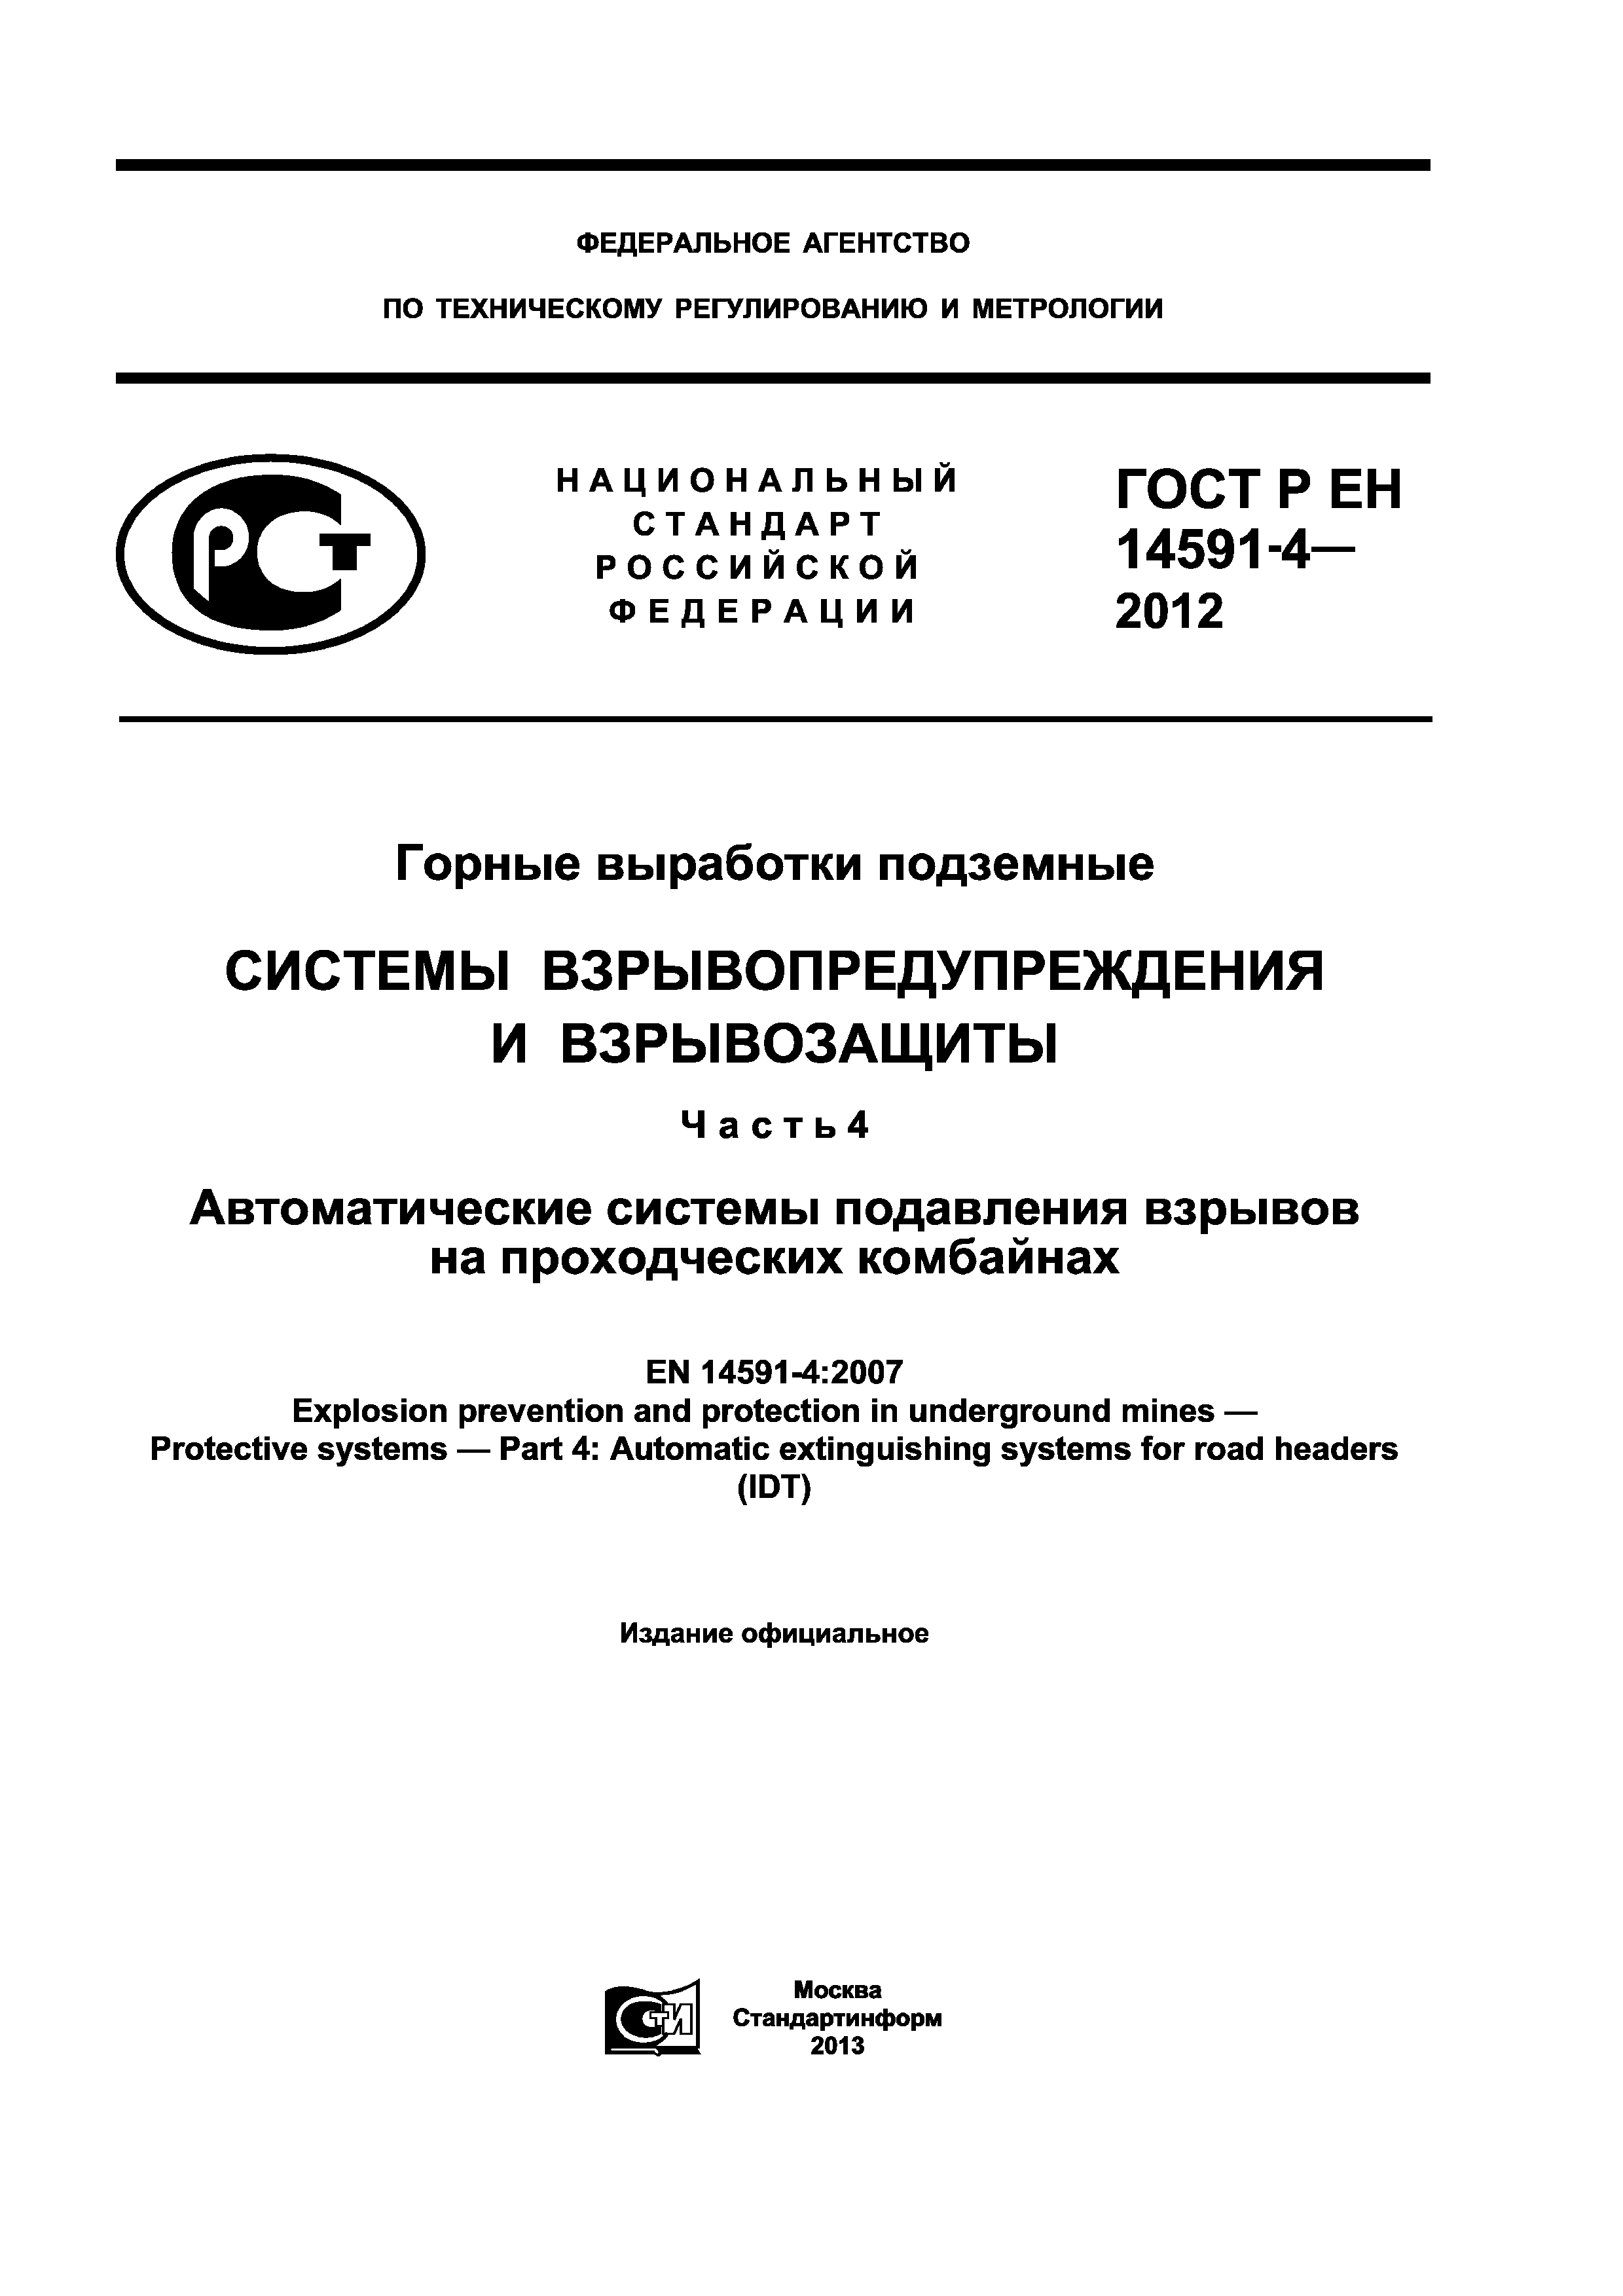 ГОСТ Р ЕН 14591-4-2012